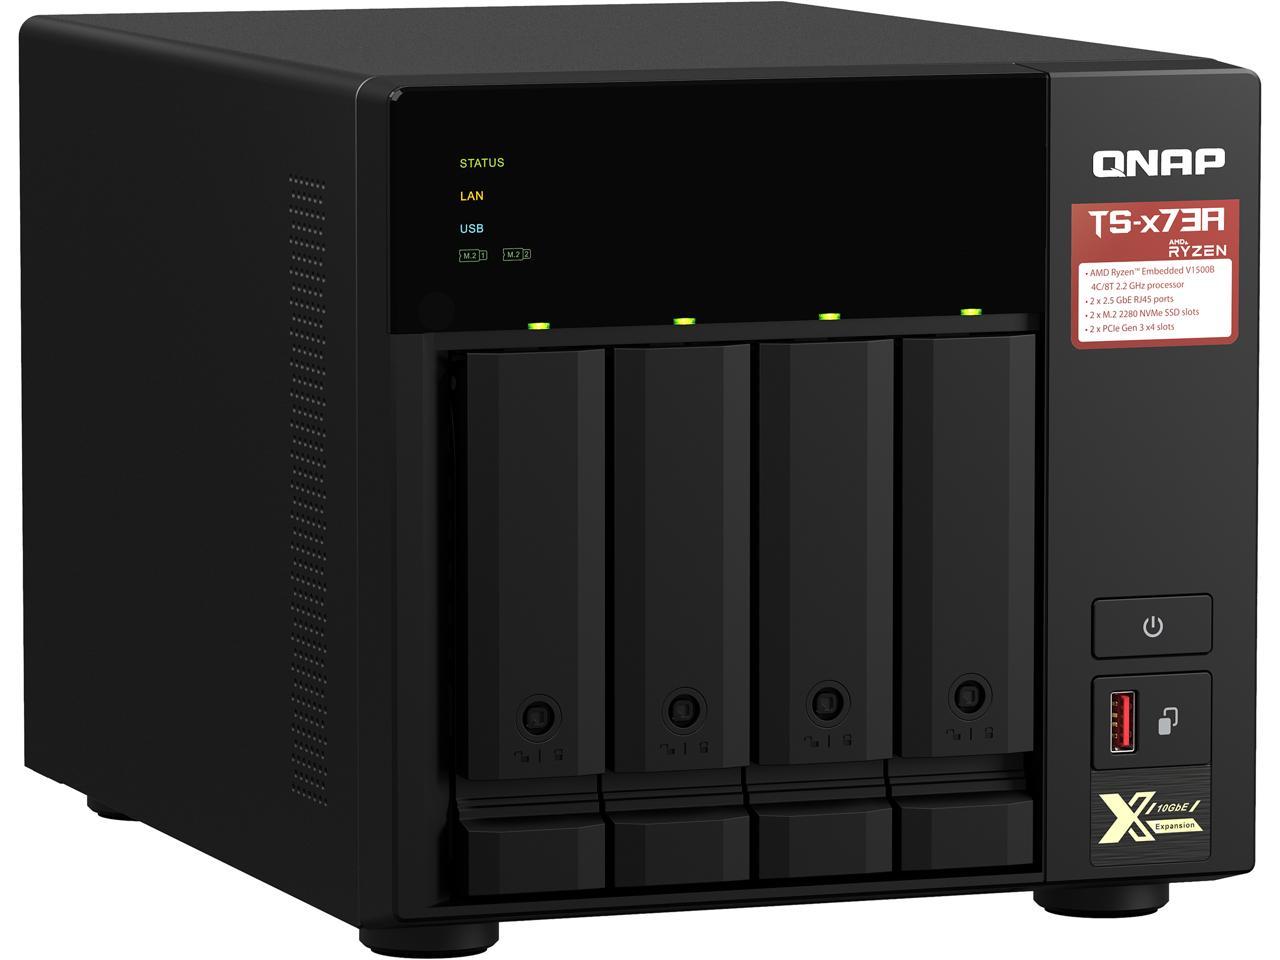 QNAP TS-473A-8G-US 4-Bay Ryzen Desktop NAS (Diskless) $562.70 + Free Shipping